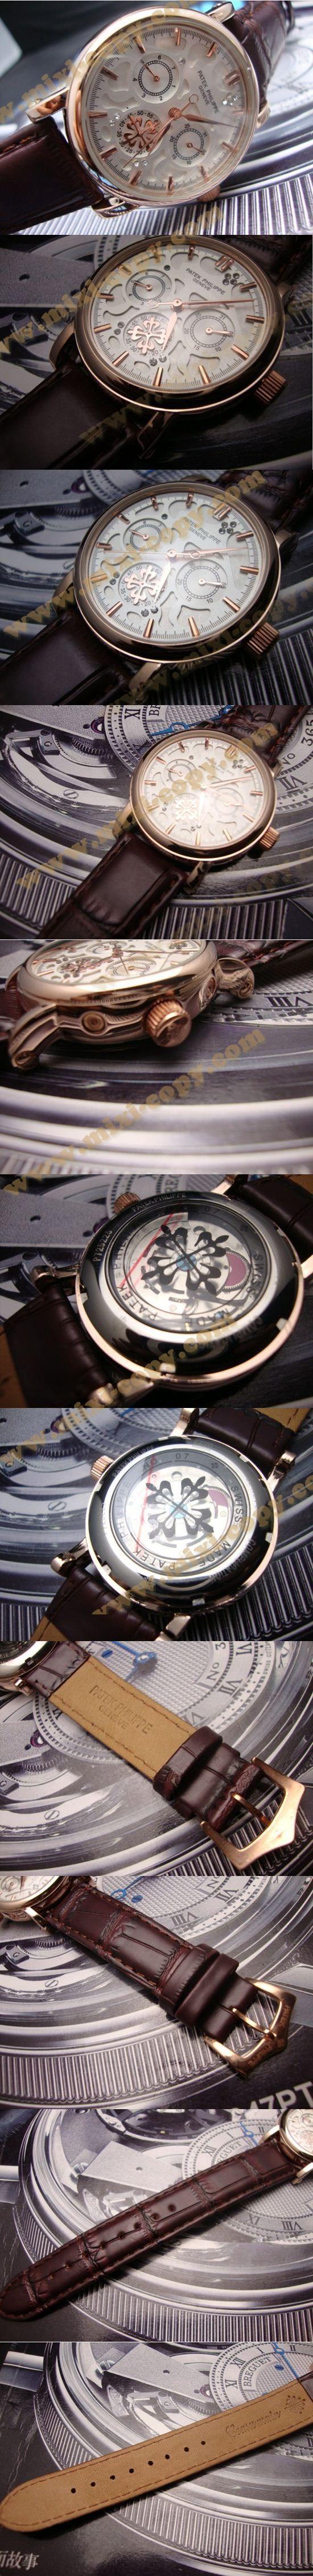 おしゃれなブランド時計がPATEK PHILIPPE-パテック フィリップ腕時計 パテック フィリップ 男/女腕時計 PATEK-PHILIPPE-N-015A を提供します.